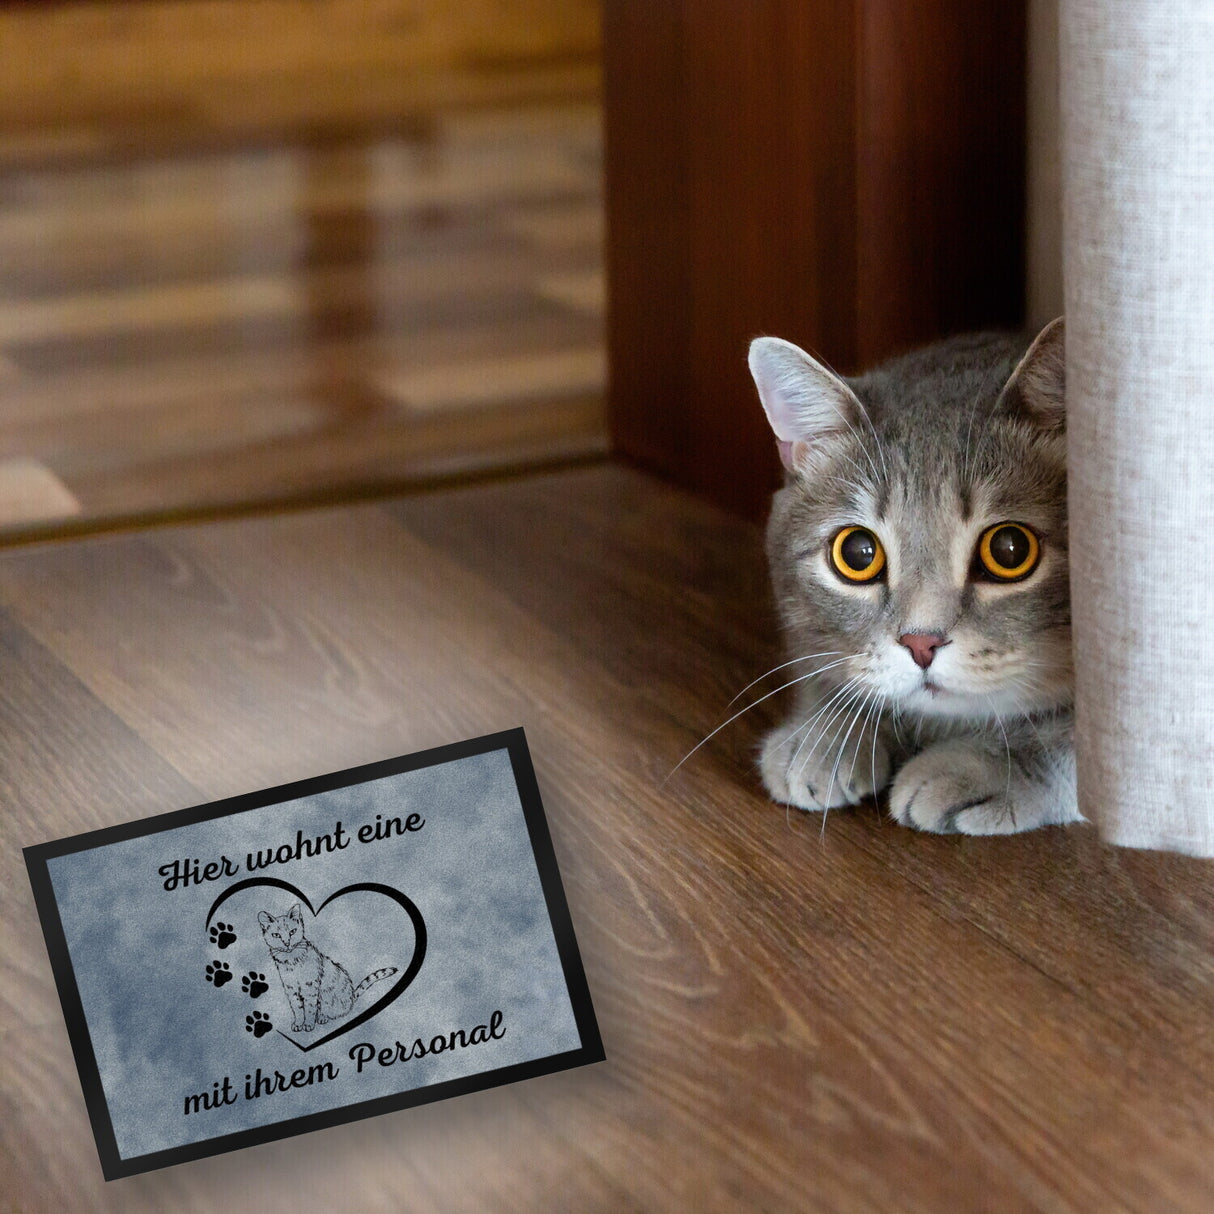 Fußmatte in 35x50 cm - Hier wohnt eine Katze mit ihrem Personal